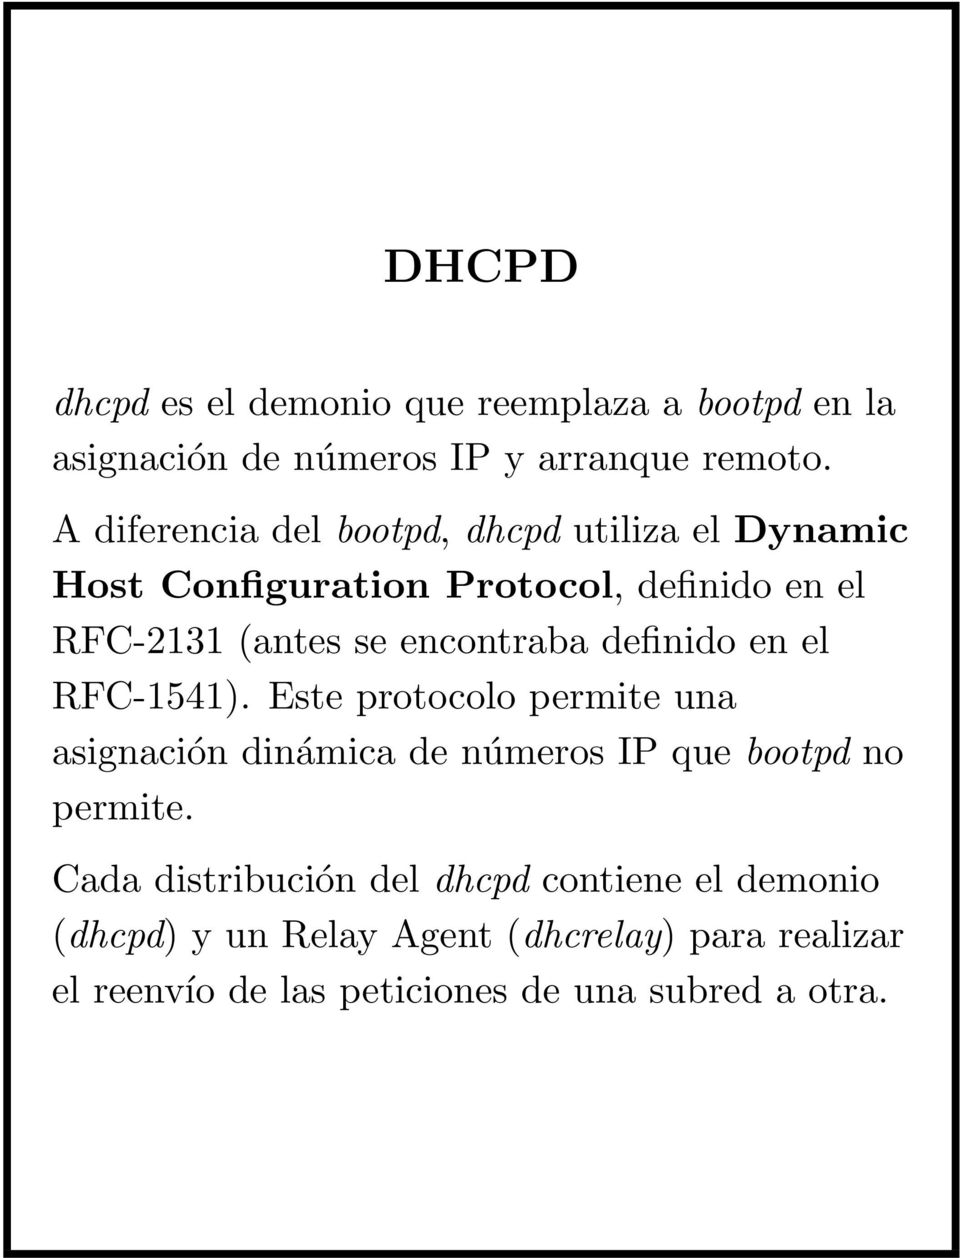 encontraba definido en el RFC-1541). Este protocolo permite una asignación dinámica de números IP que bootpd no permite.